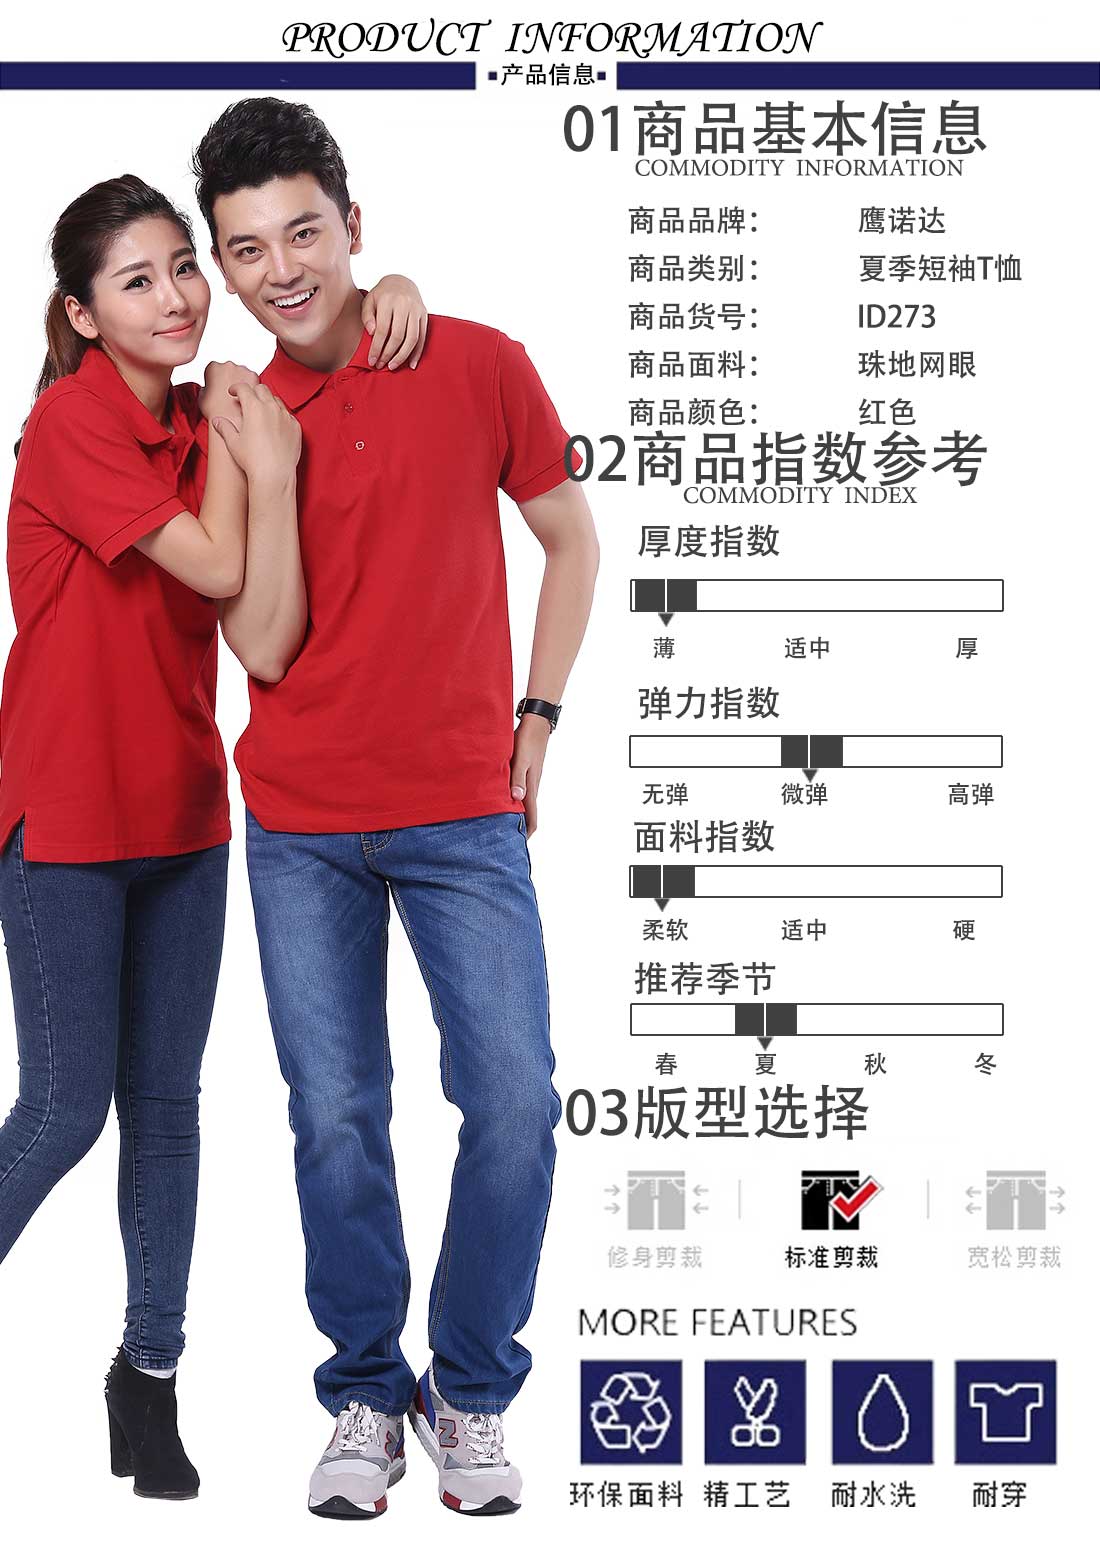 武汉文化衫商品基本信息、指数参考、版型选择 